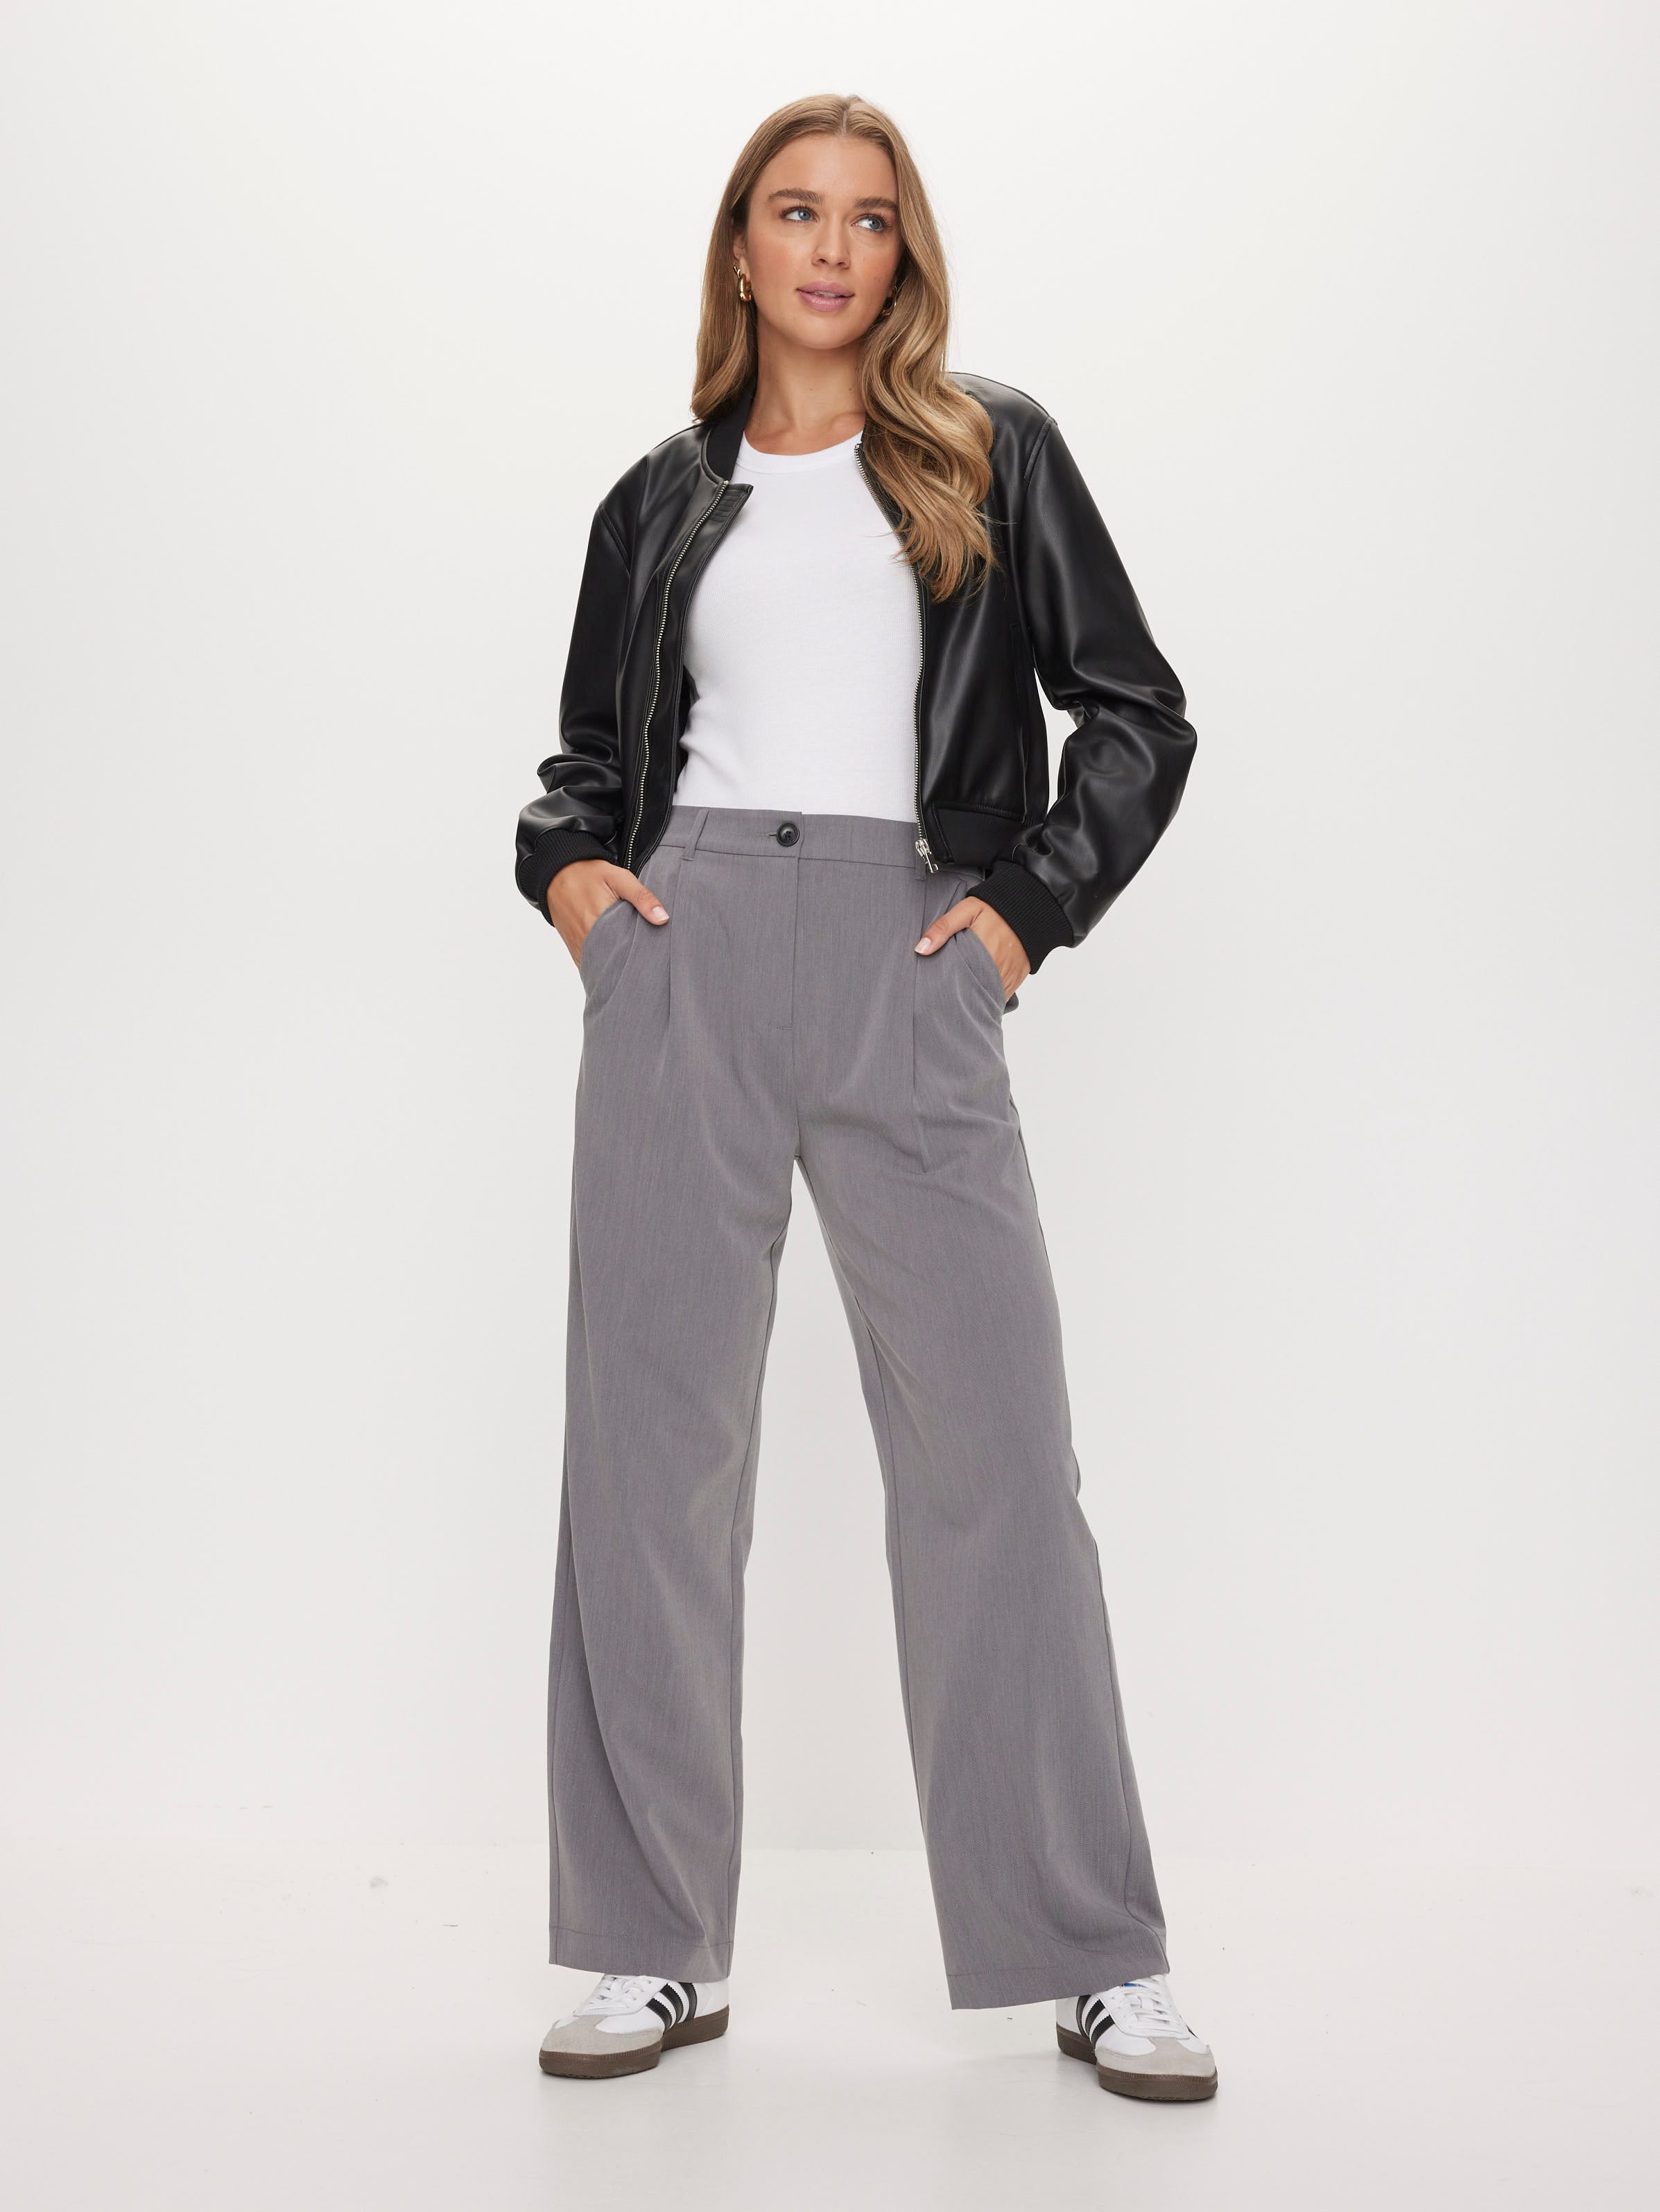 Training pants (3/4 long) in Sale for women, Buy online